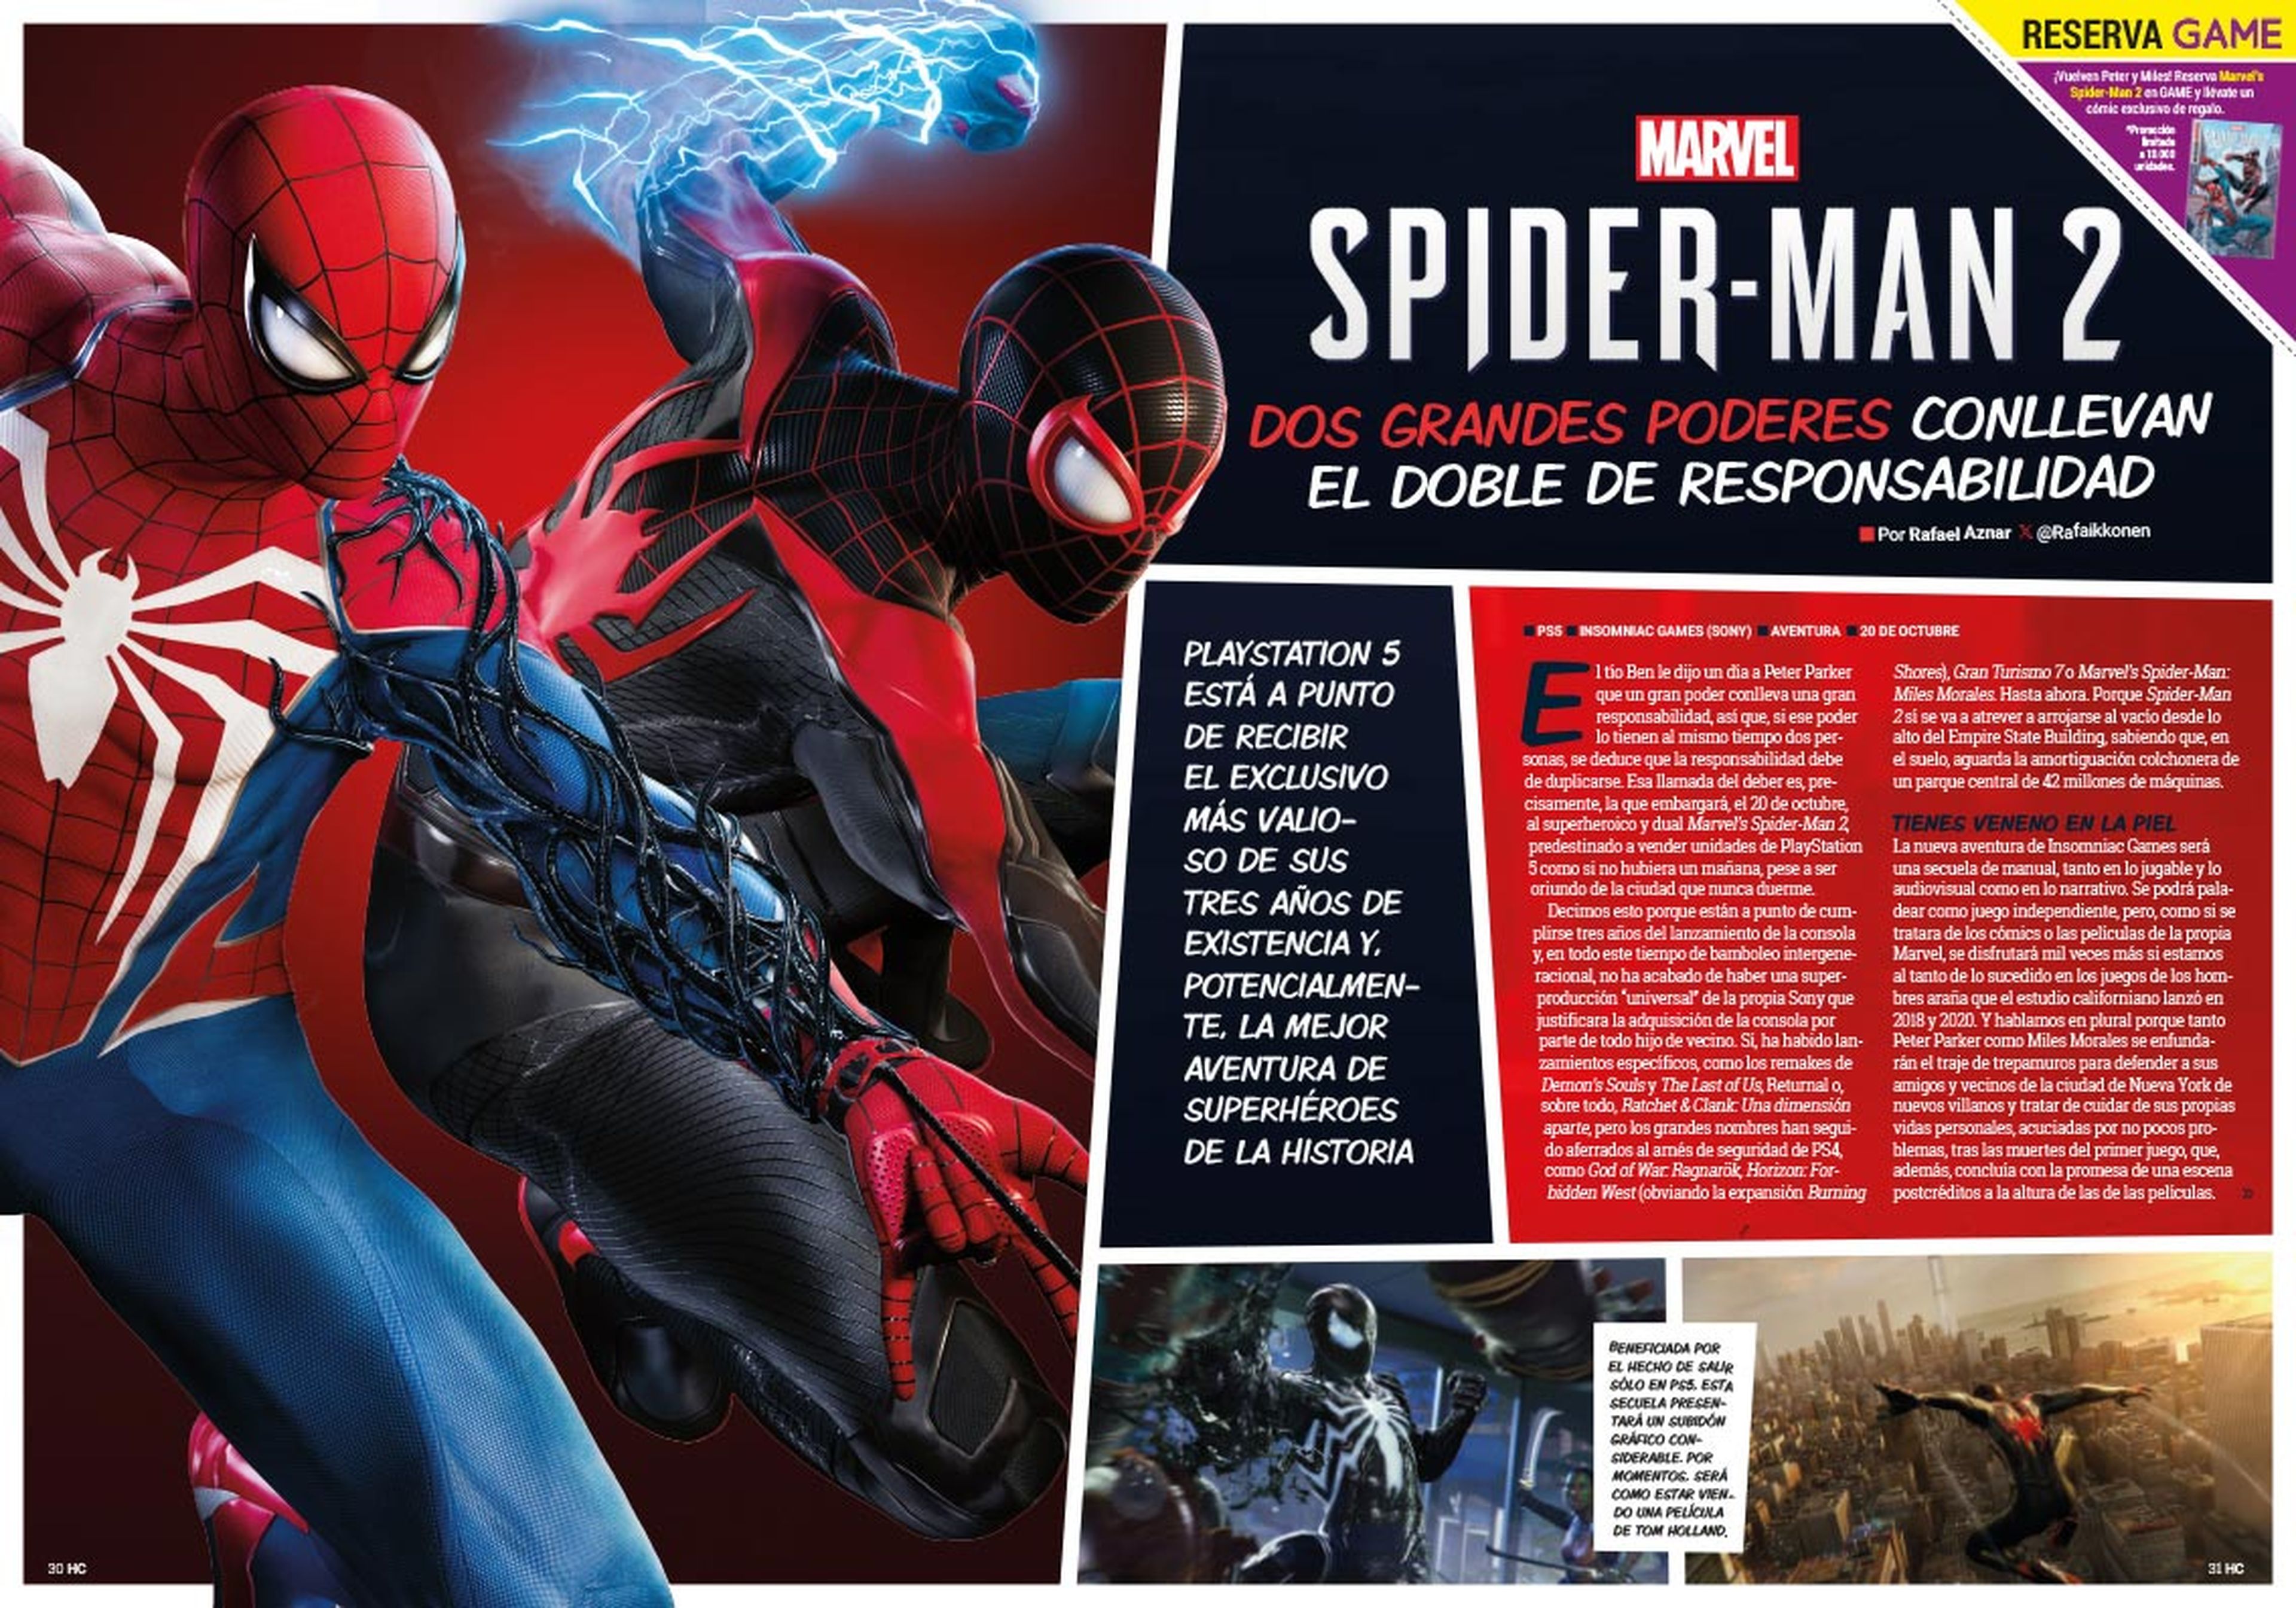 Hobby Consolas 387, a la venta con Marvel’s Spider-Man 2 en portada